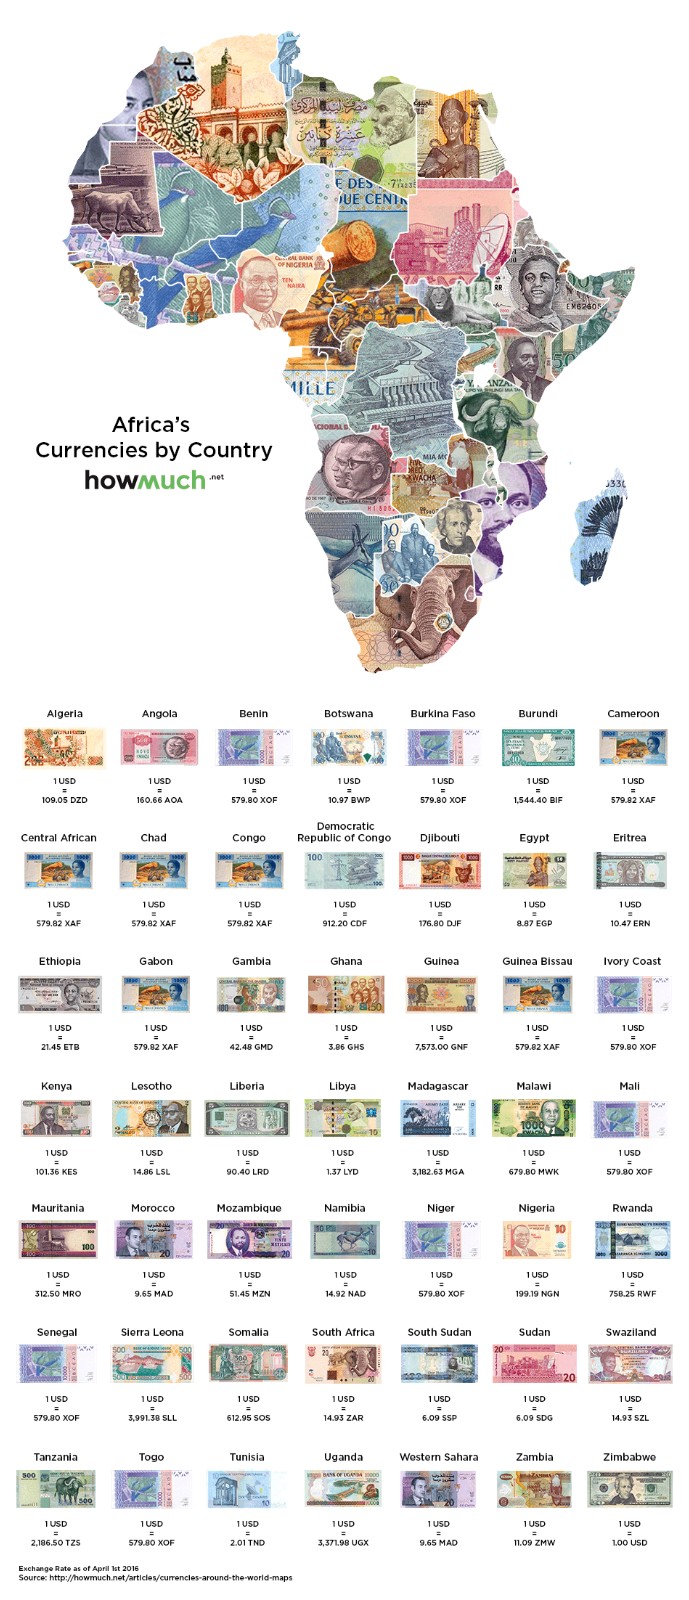 37利比亚第纳尔突尼斯:1美元=201突尼斯第纳尔加纳:1美元=3